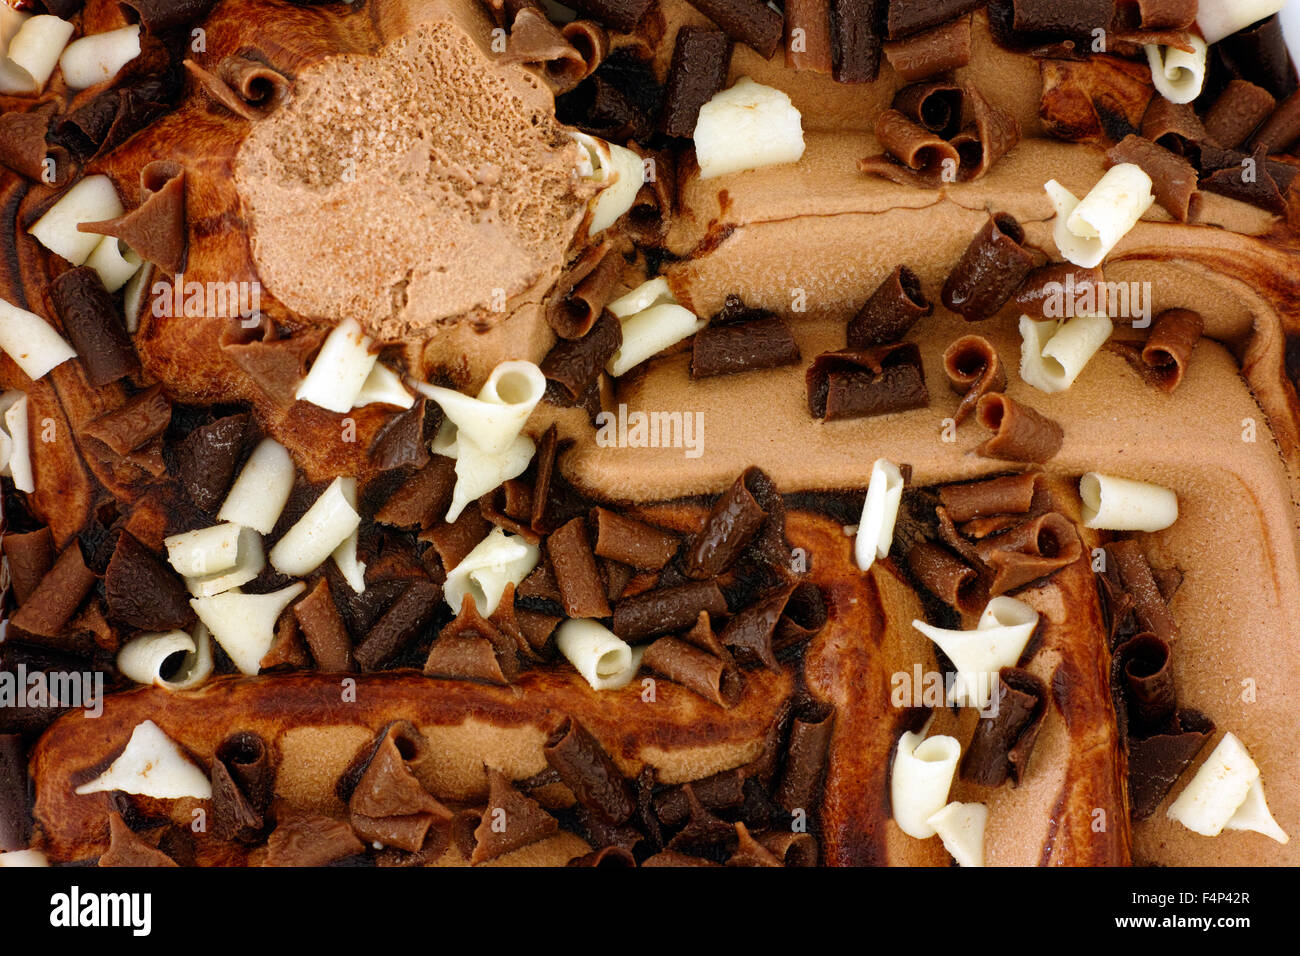 Background of chocolate ice cream with chocolate swirls Stock Photo